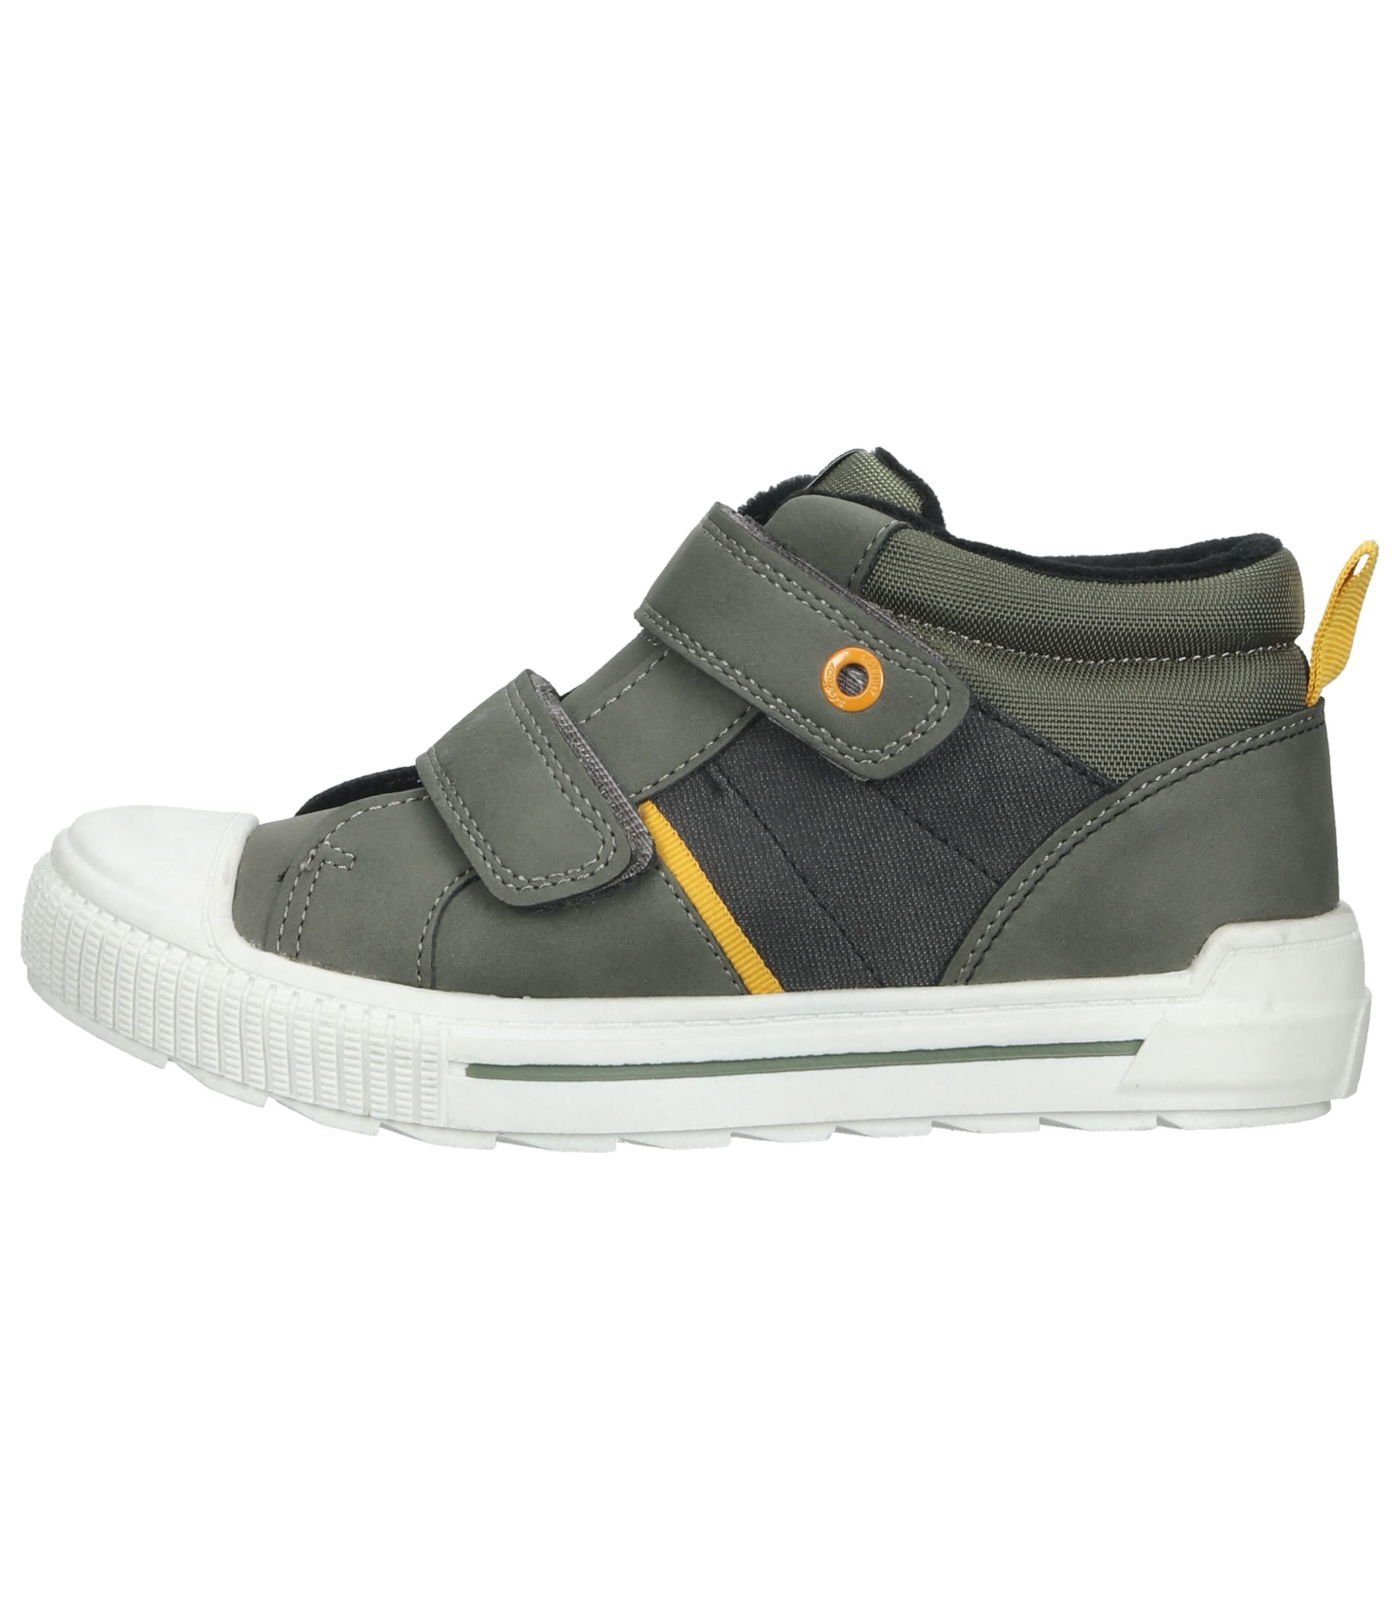 Khaki s.Oliver Lederimitat/Textil Sneaker Sneaker